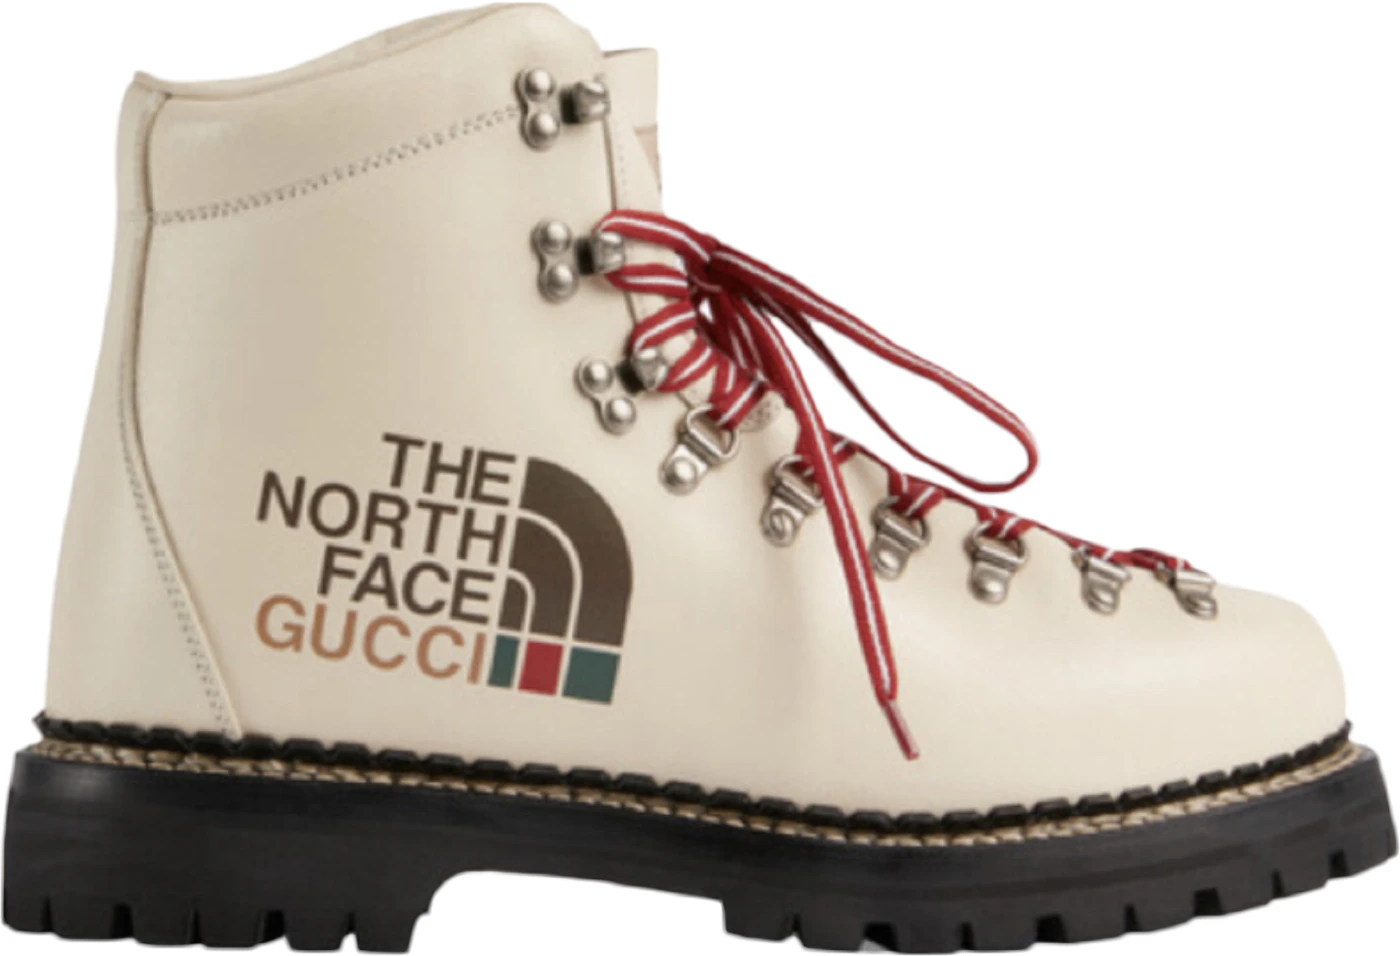 The North Face x Gucci women's boot - Gucci Replica